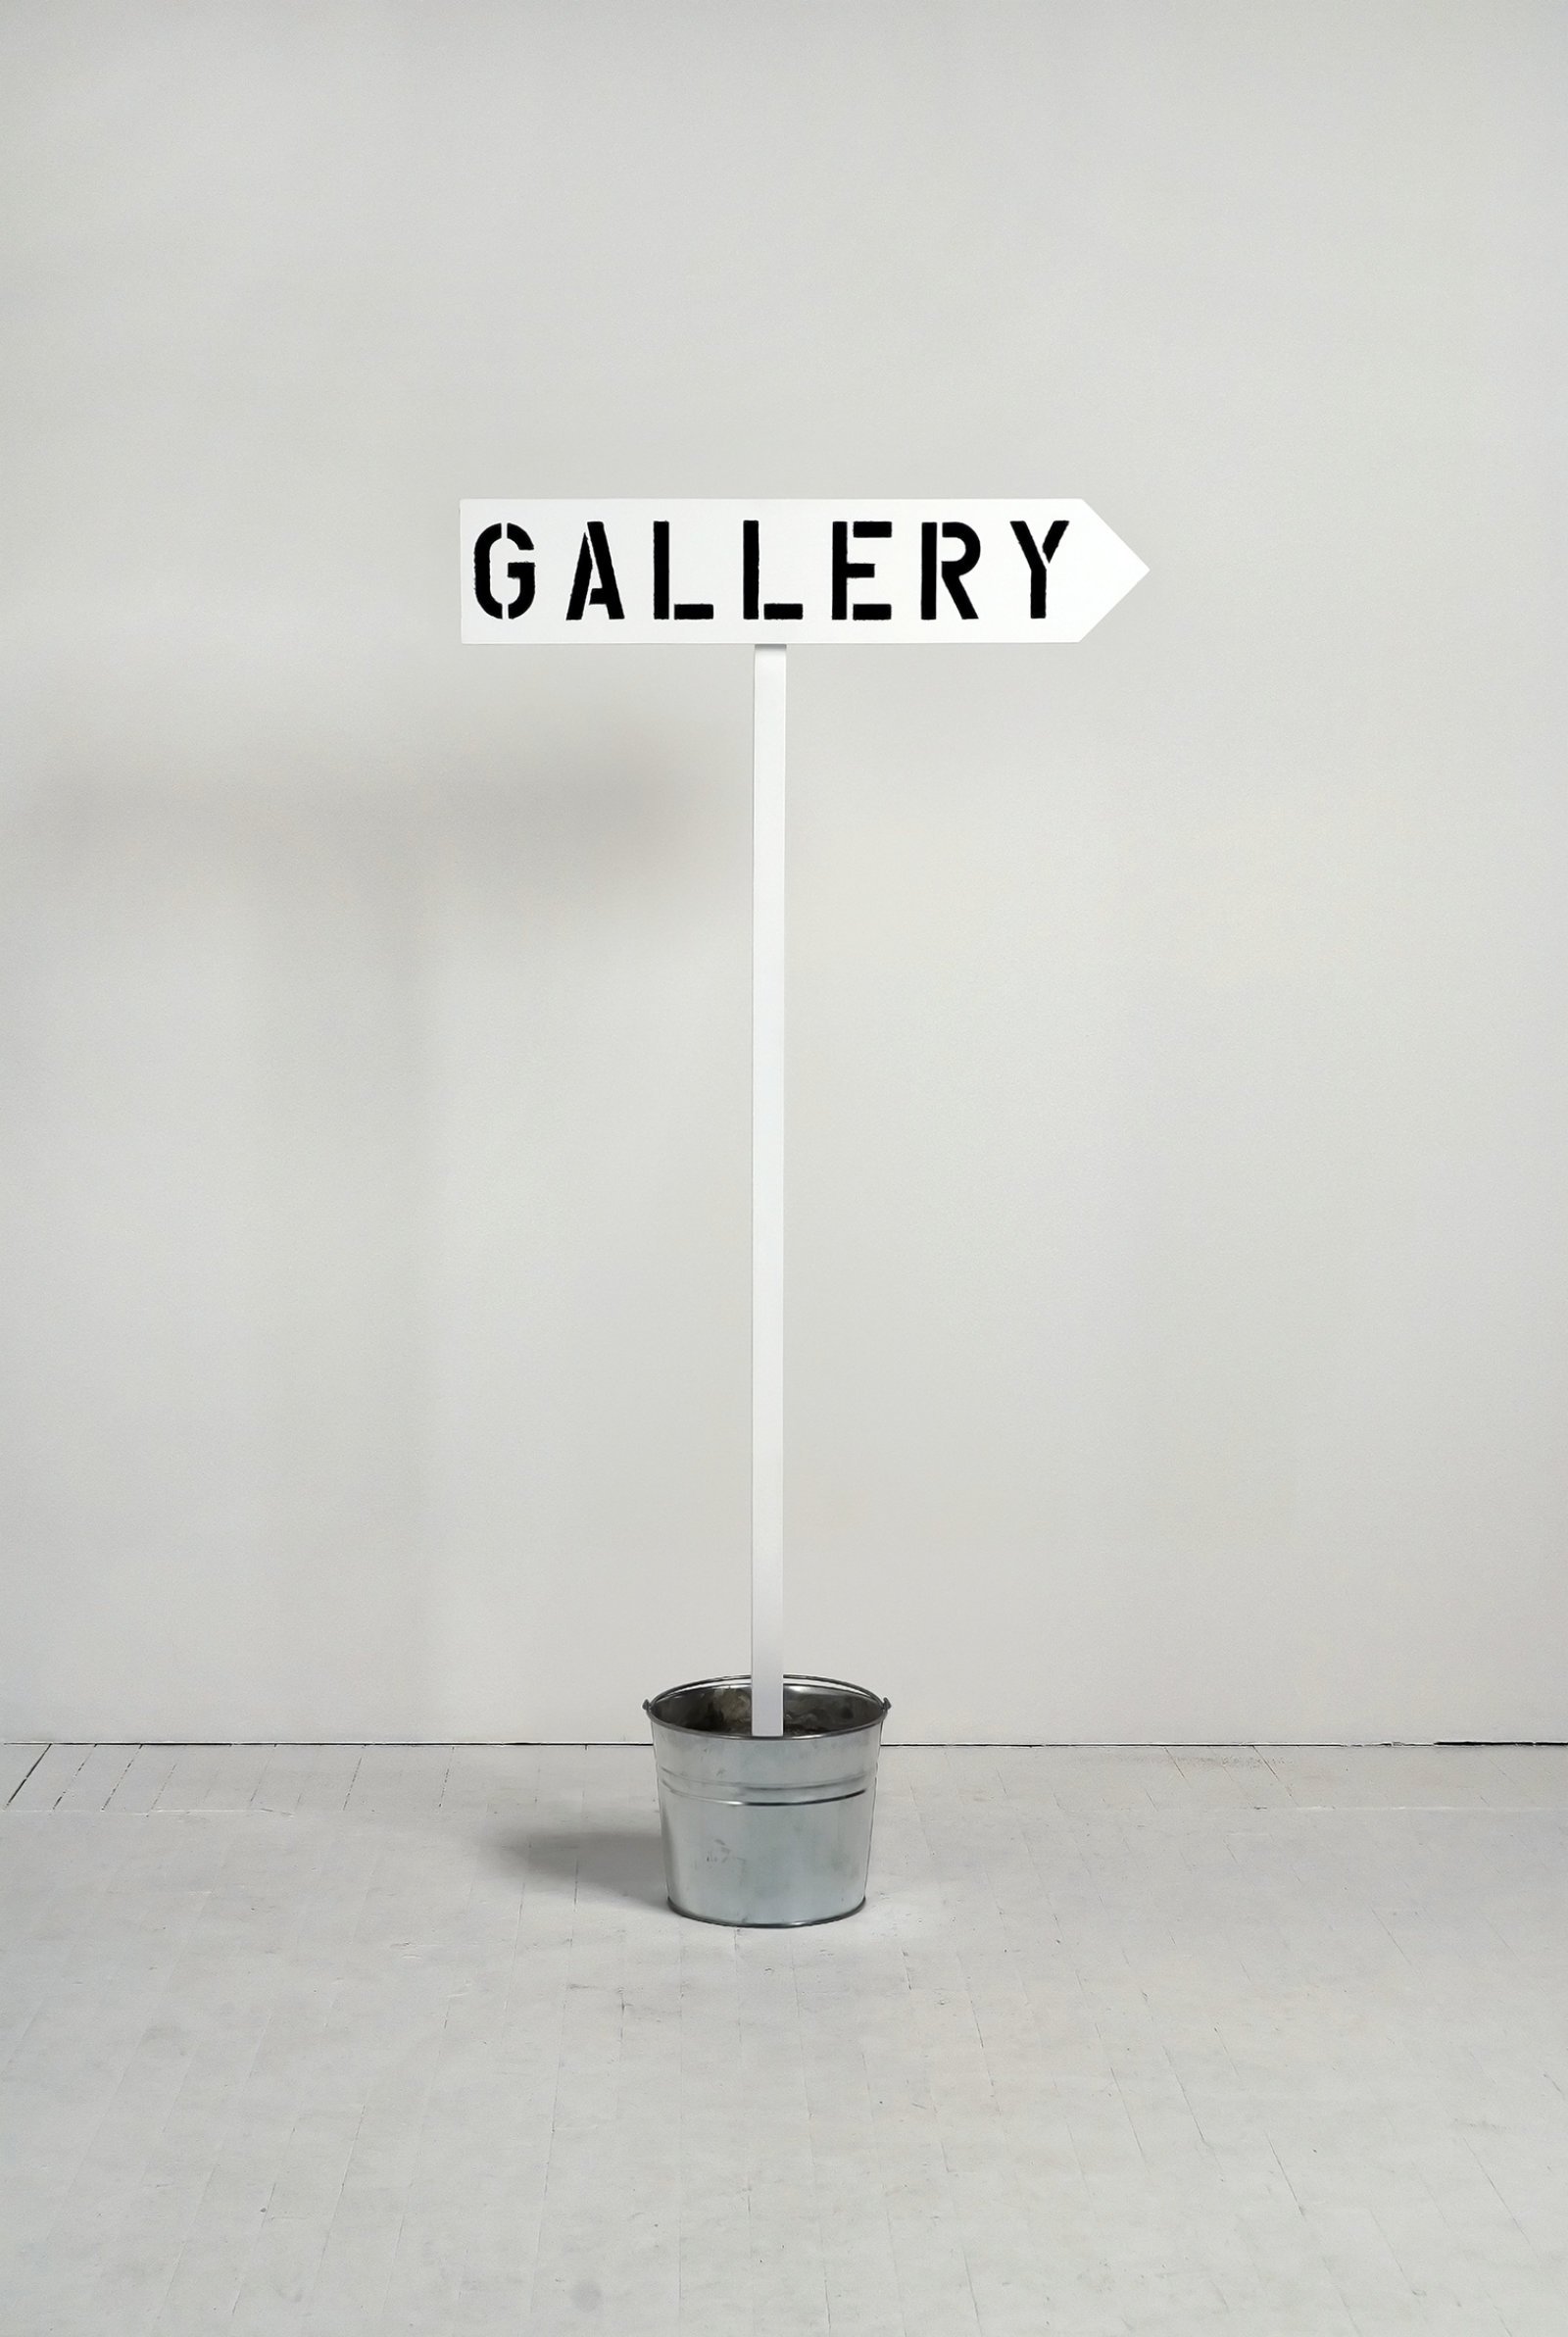 Ron Terada, Gallery, Galerie, Galleria, 2010, pigment ink print, 28 x 20 in. (70 x 51 cm)